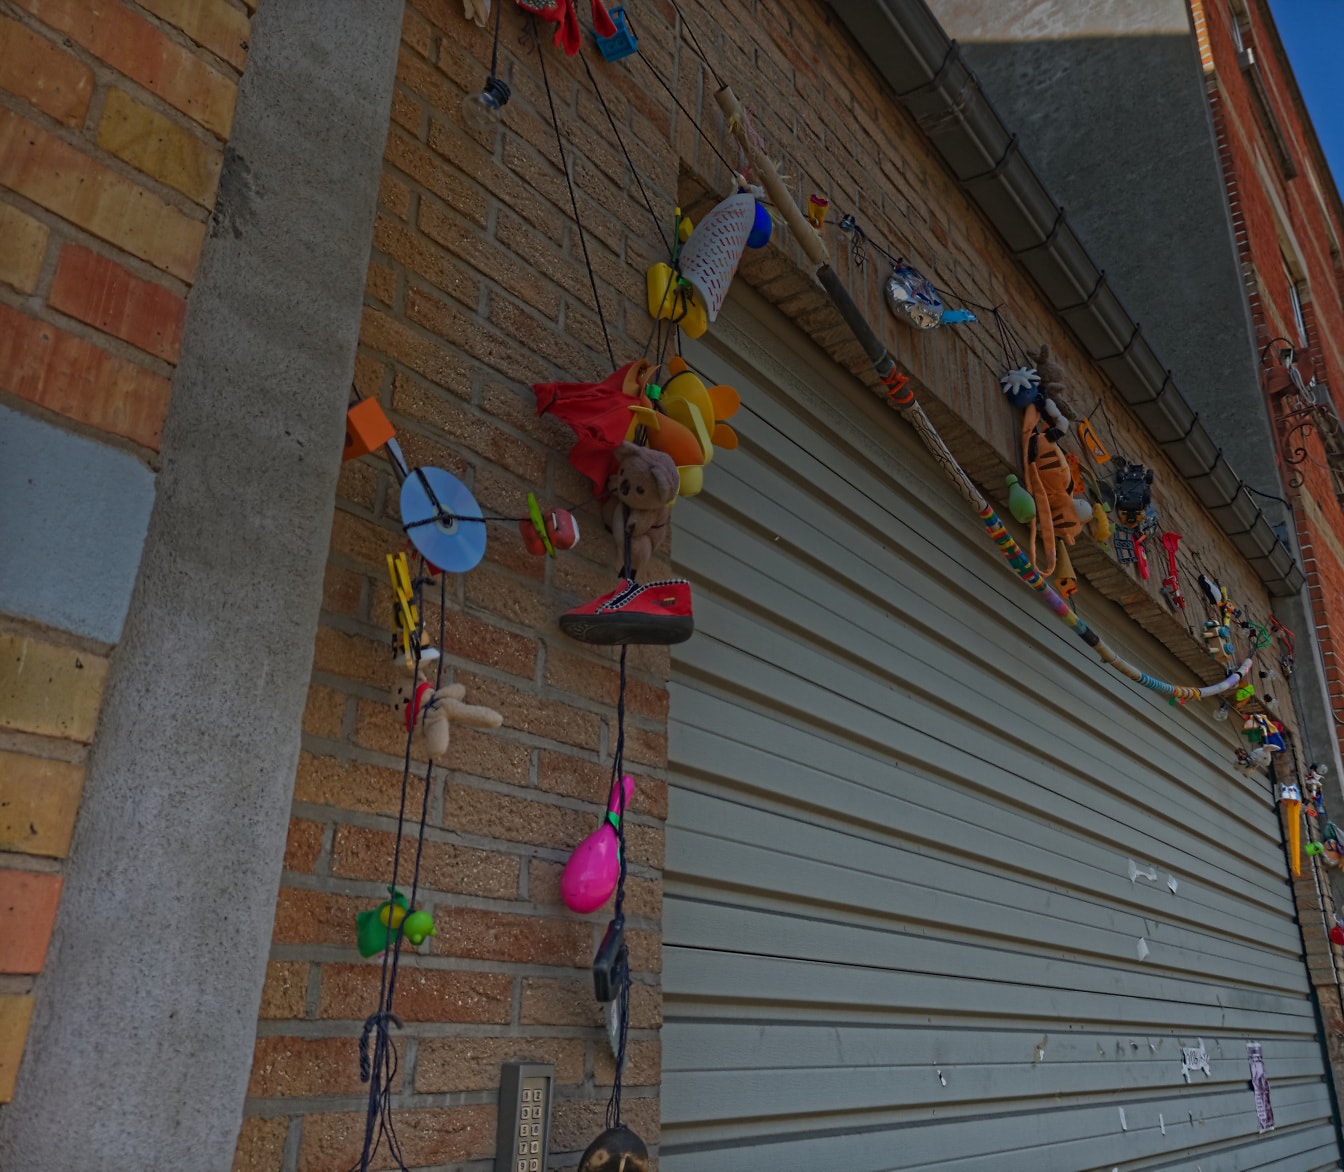 Muchos juguetes coloridos colgados en la pared junto a la puerta del garaje